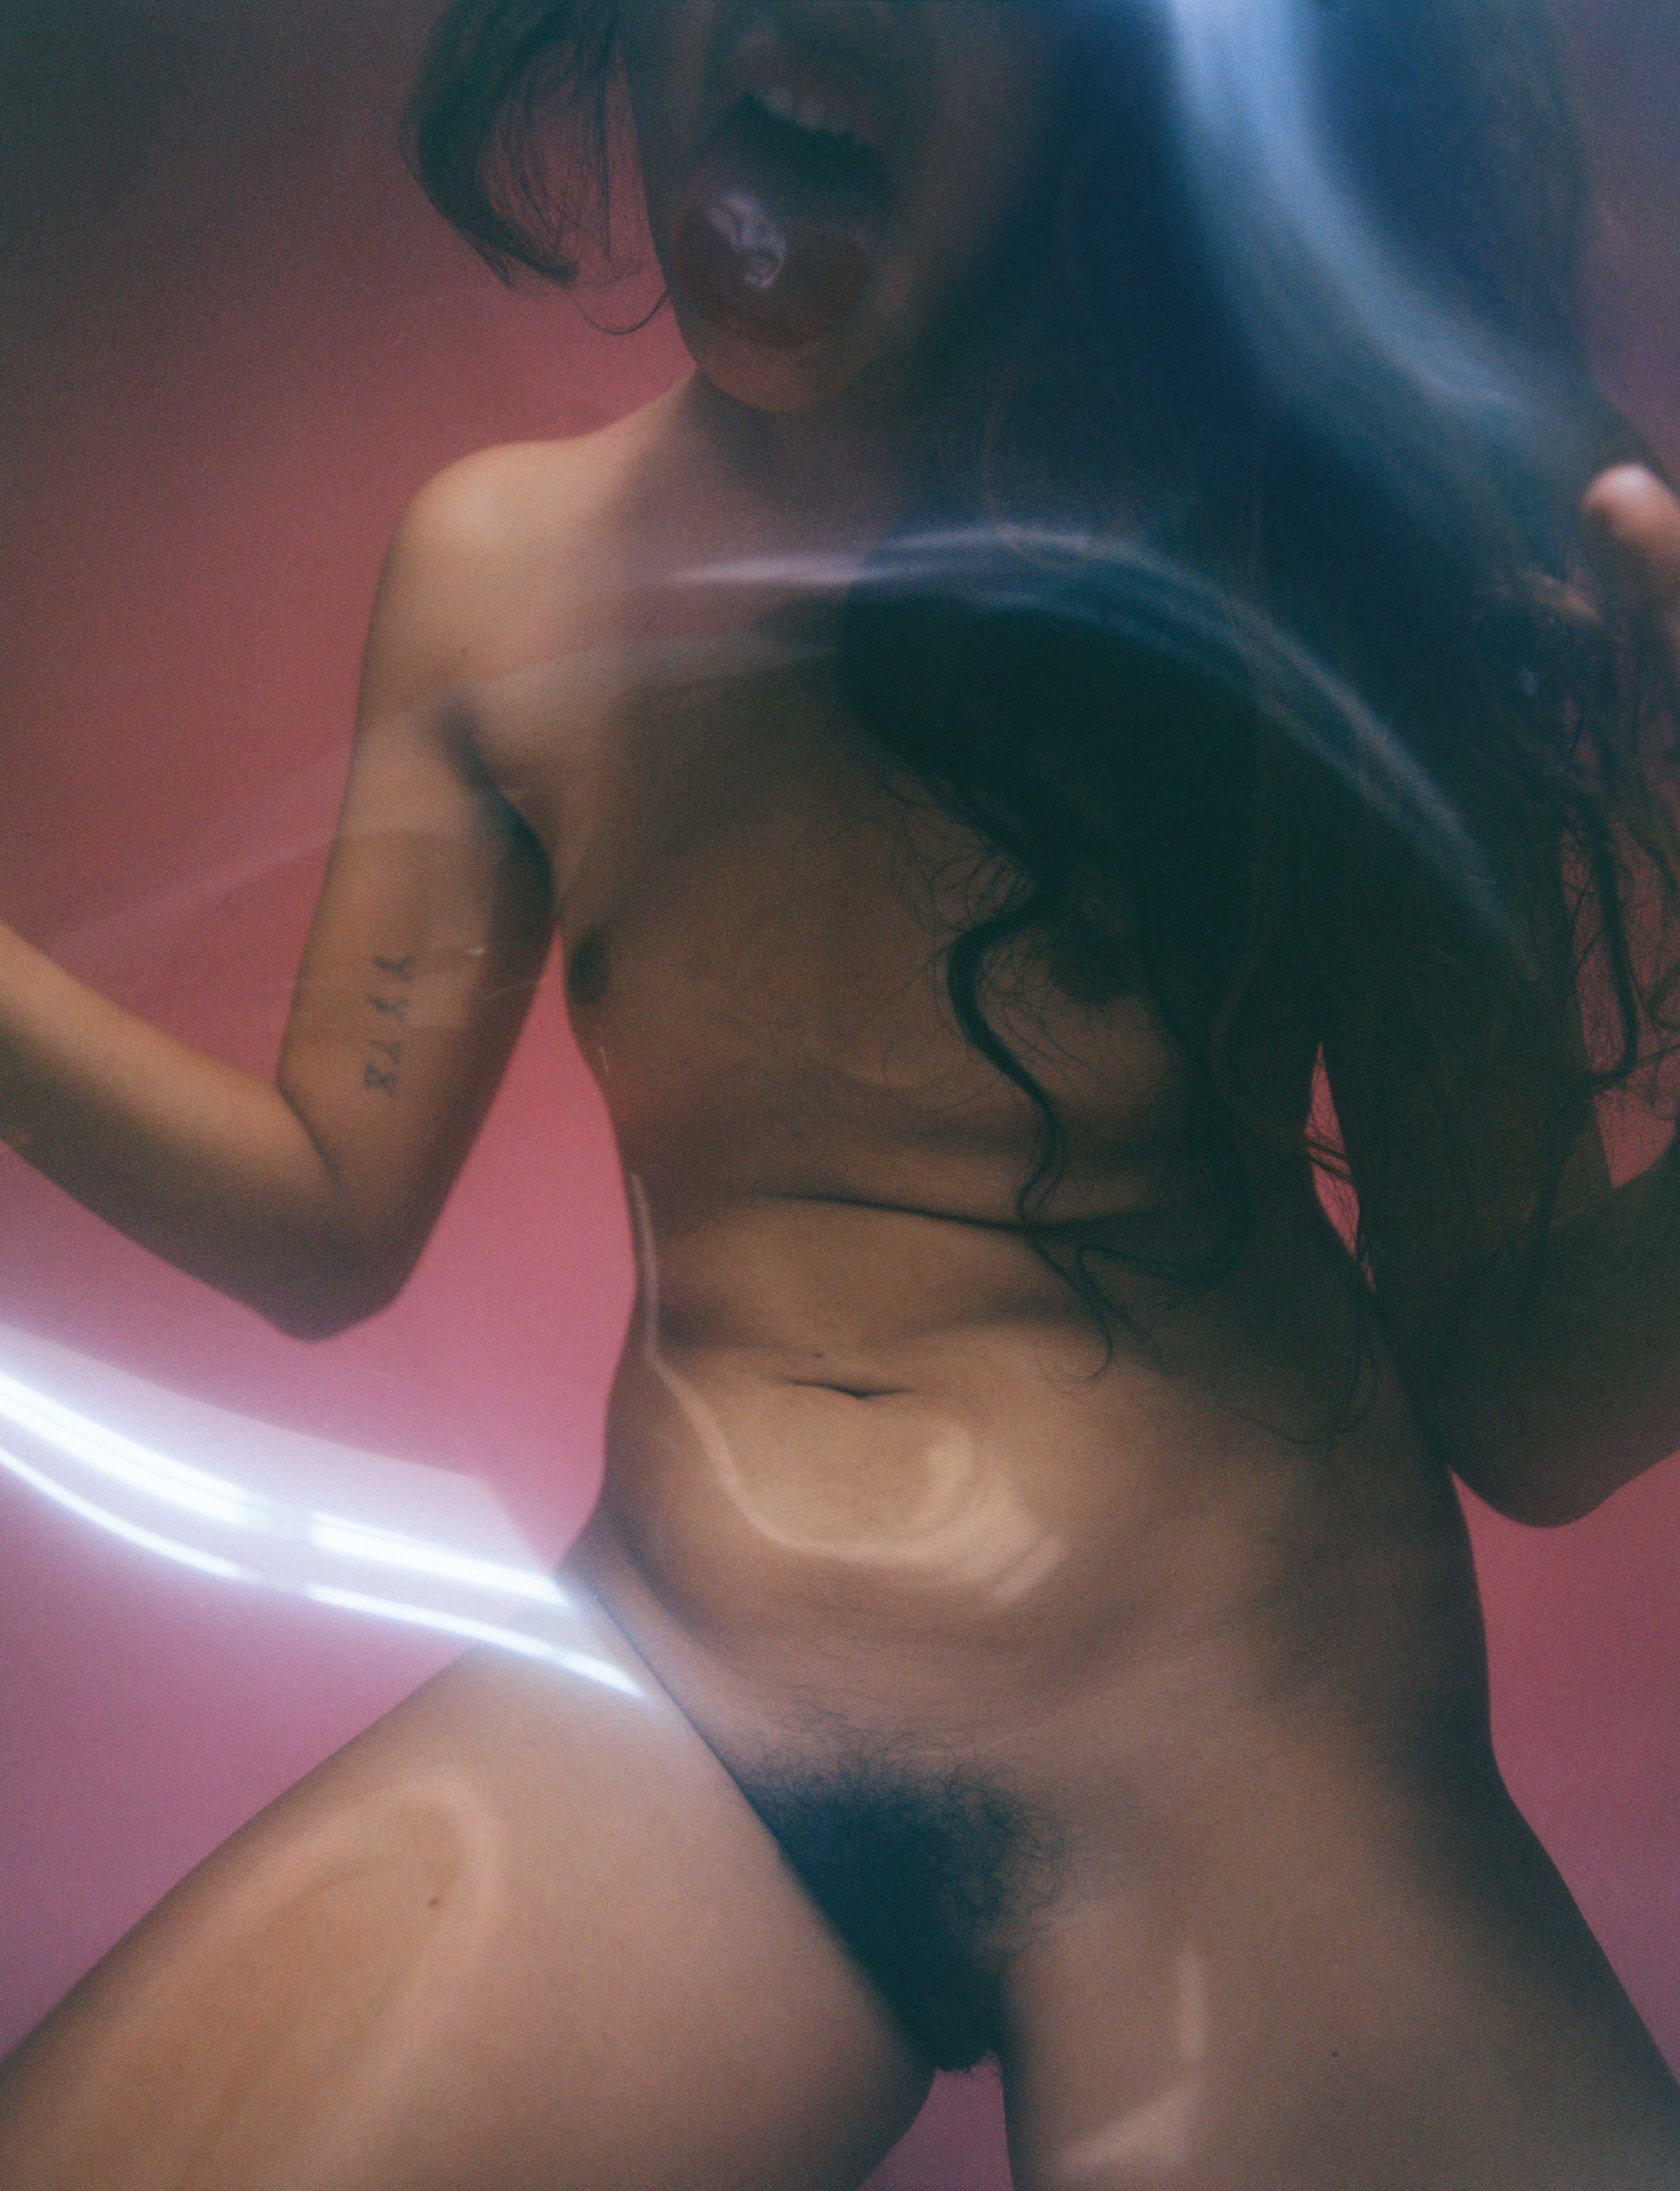 Sonoya mizuno nude - ðŸ§¡ 297 best r/celebsnudess images on Pholder Rachel Co...